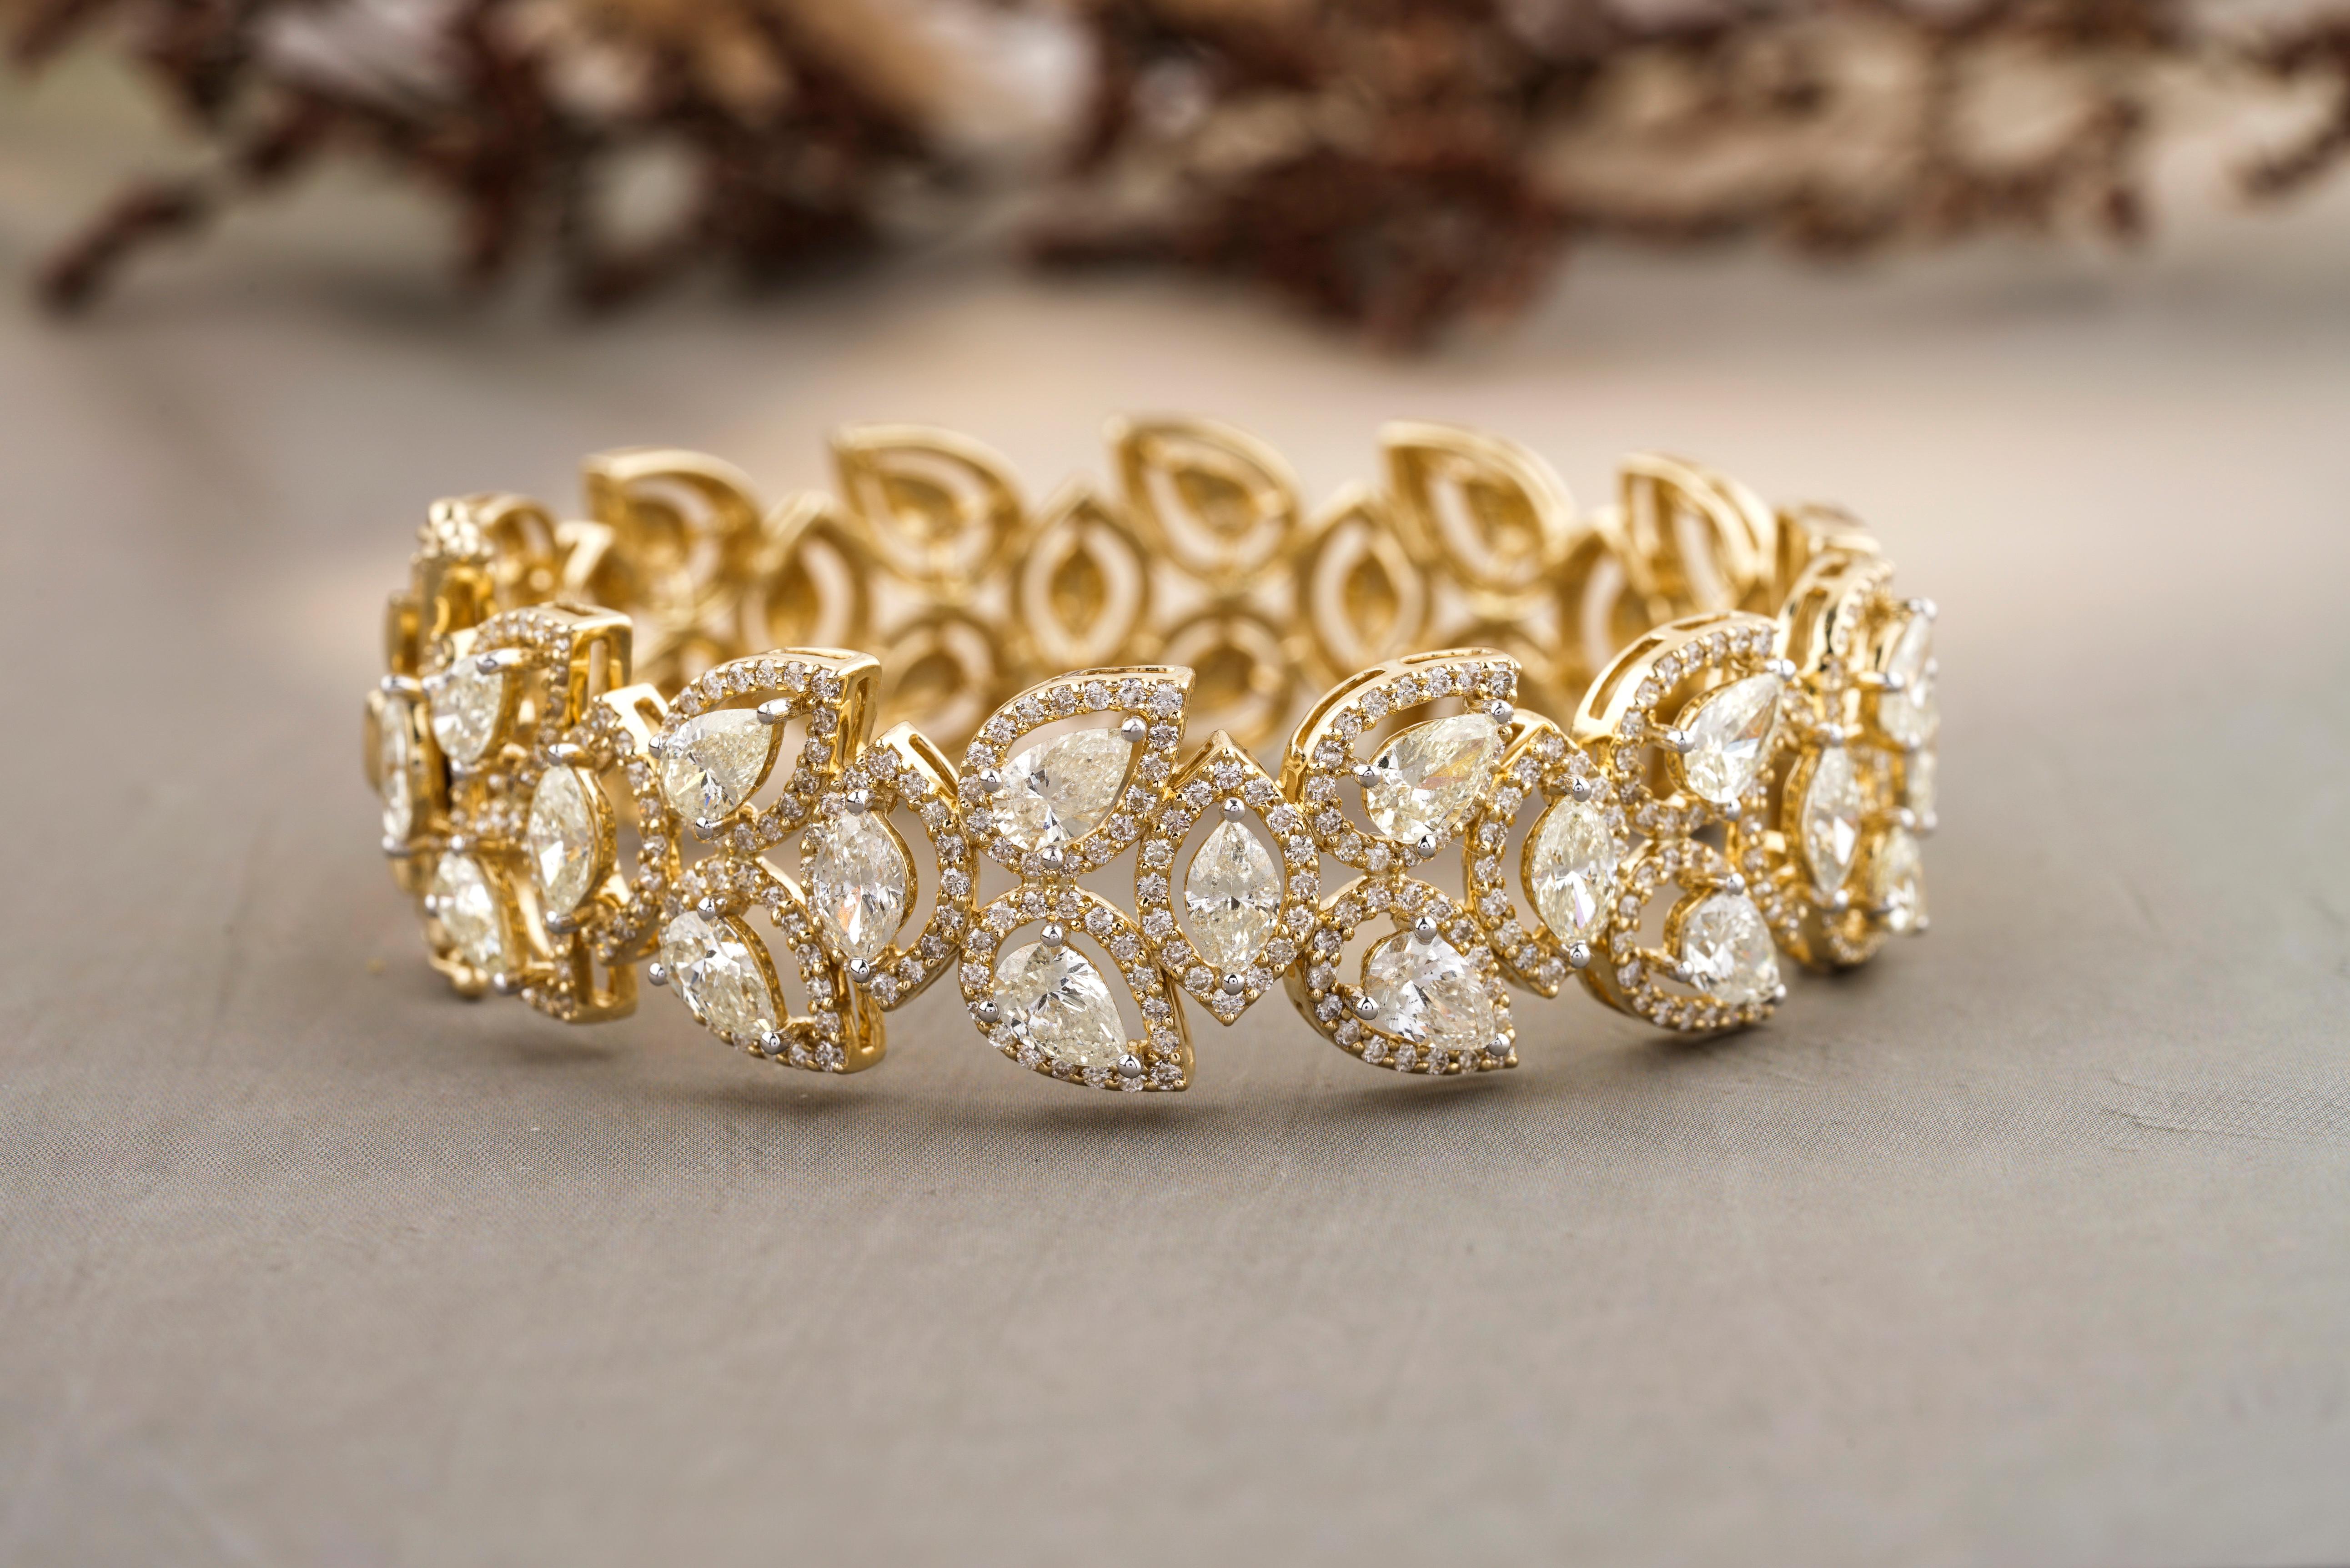 Das Marquise & Pear Diamond Bracelet ist ein atemberaubendes Schmuckstück aus 18k massivem Gold. Das Armband zeichnet sich durch ein einzigartiges Design aus, das marquise und birnenförmige Diamanten in einem floralen Muster vereint. Die Diamanten